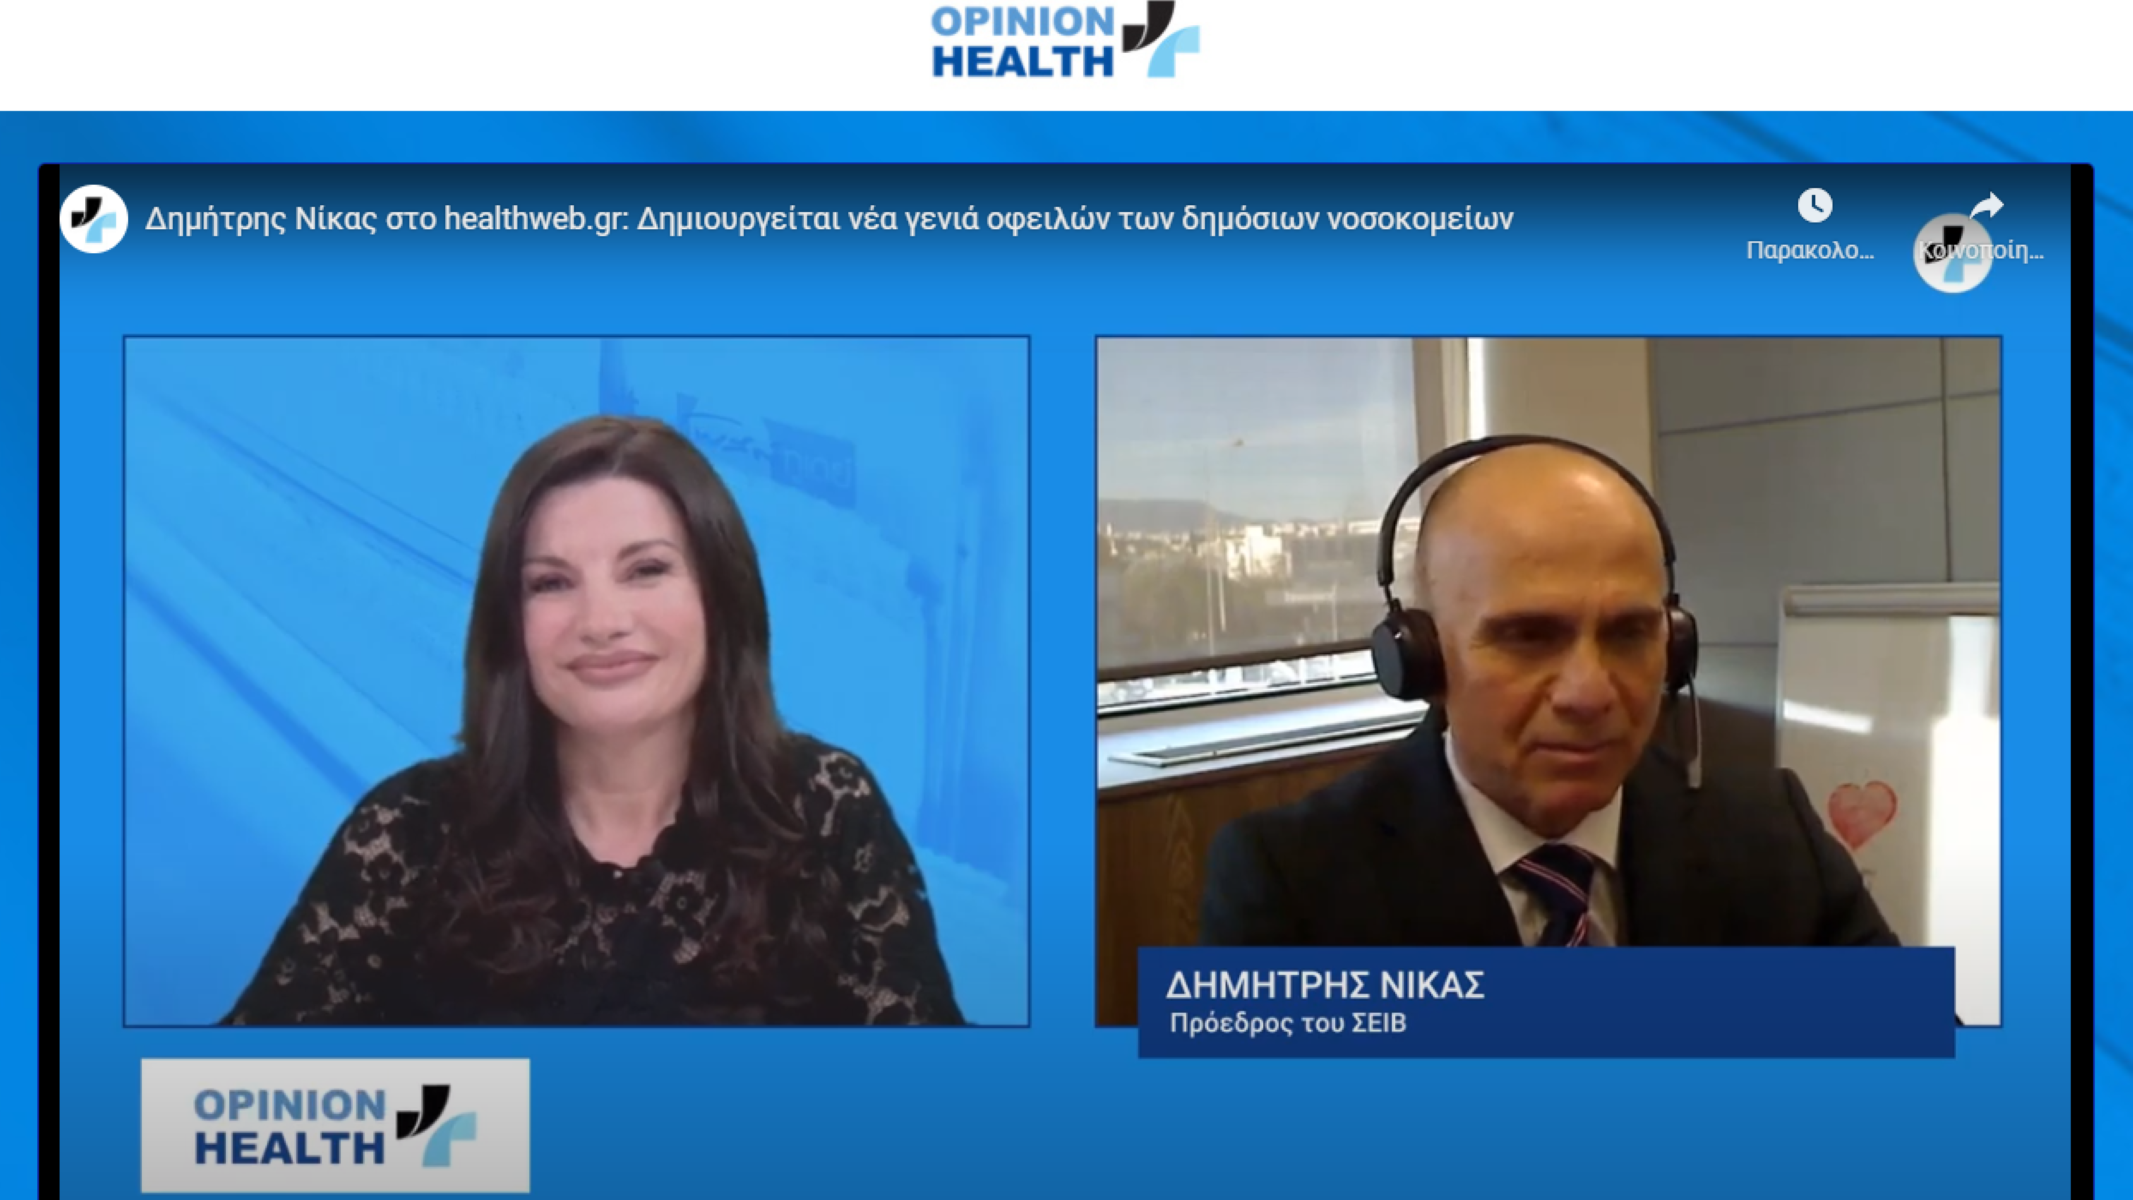 Δημήτρης Νίκας αποκλειστικά στο healthweb.gr: Ο ΣΕΙΒ μπορεί να γίνει βασικός παίκτης στον μετασχηματισμό του συστήματος Υγείας 